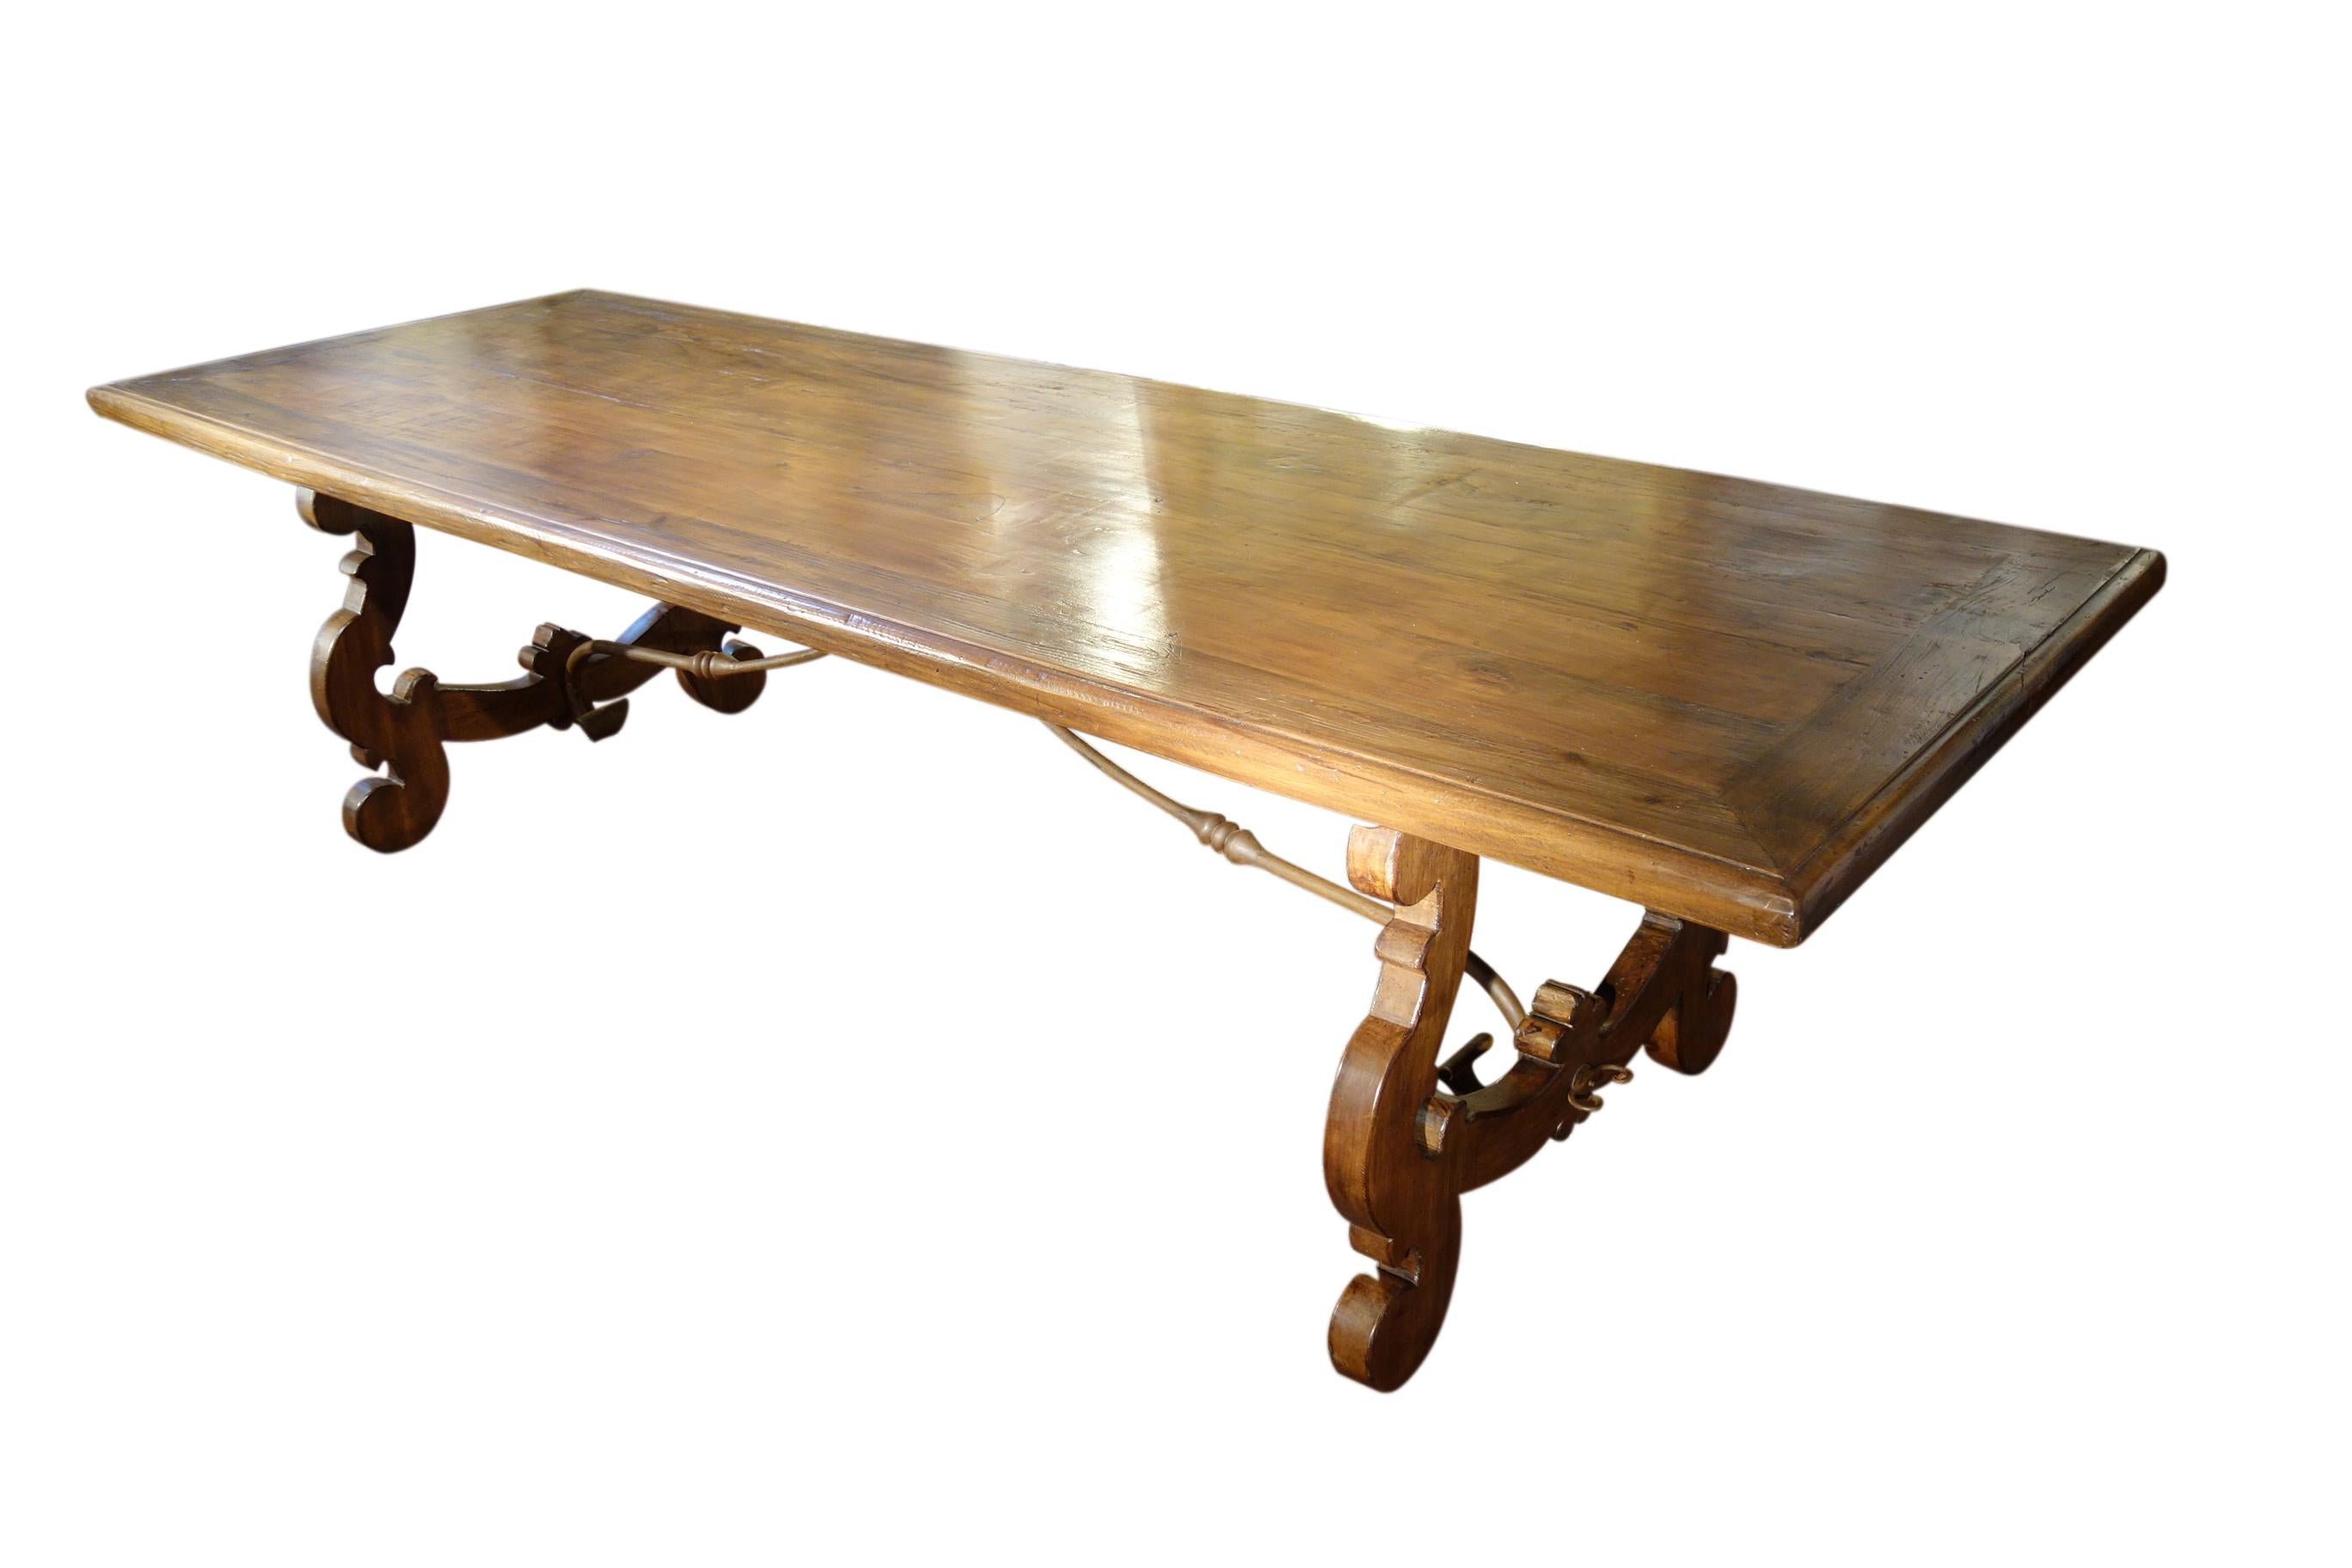 Le style de la table de réfectoire LIRA est adapté des designs de la Renaissance italienne du 15e au 19e siècle. Fabriquée à la main avec des bois durs massifs italiens vieillis et des éléments en fer forgé à la main, puis finie avec art à la